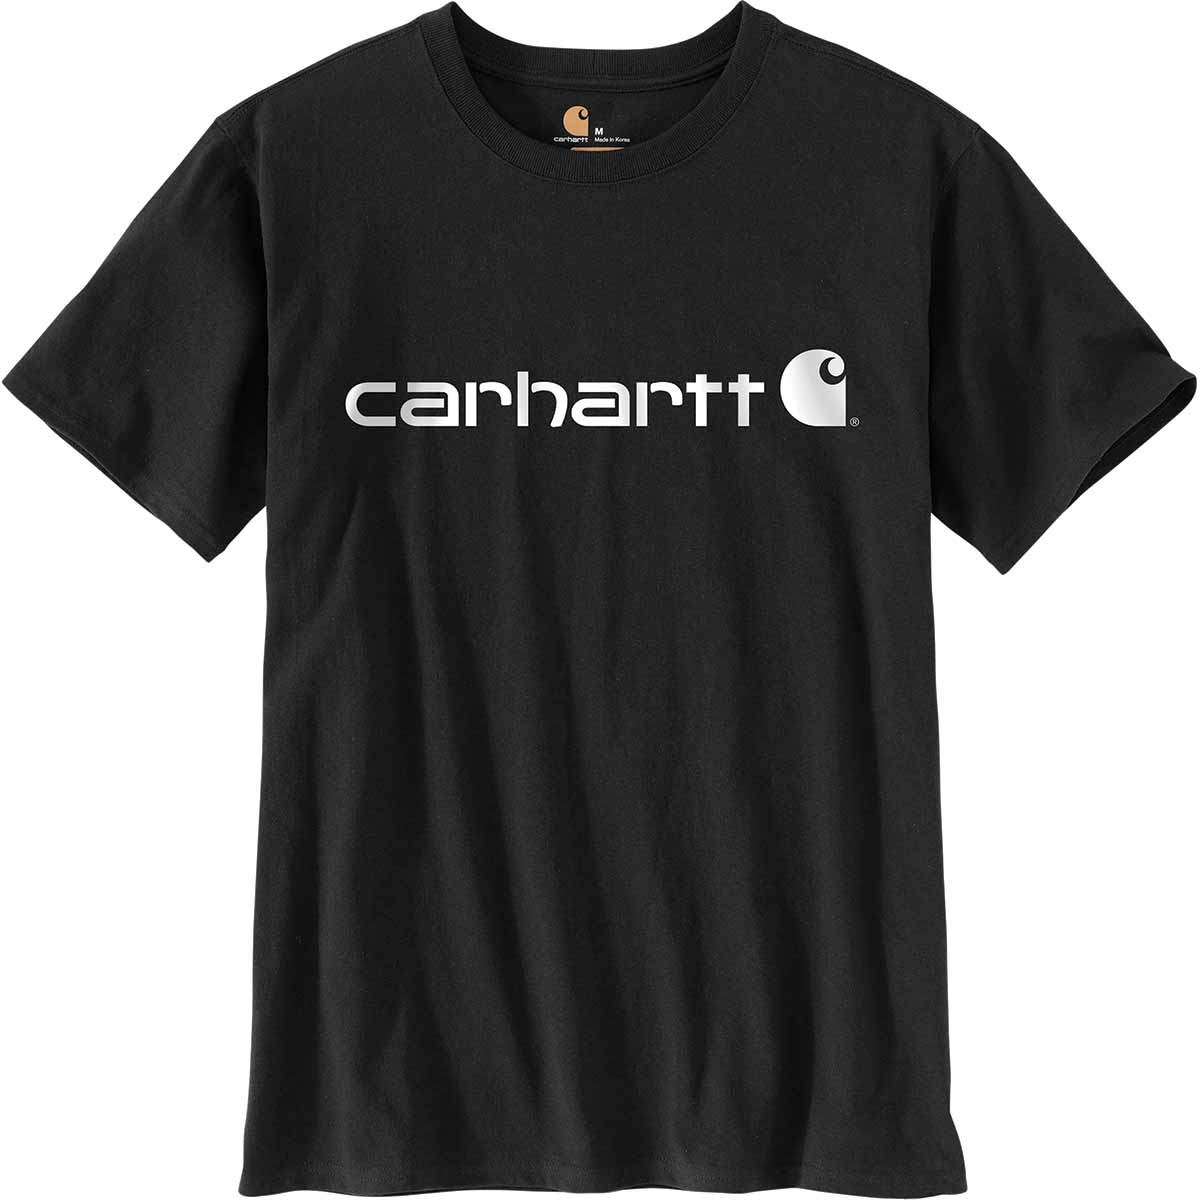 Carhartt Women's Loose Fit Heavyweight Logo Graphic Short-Sleeve T-Shirt